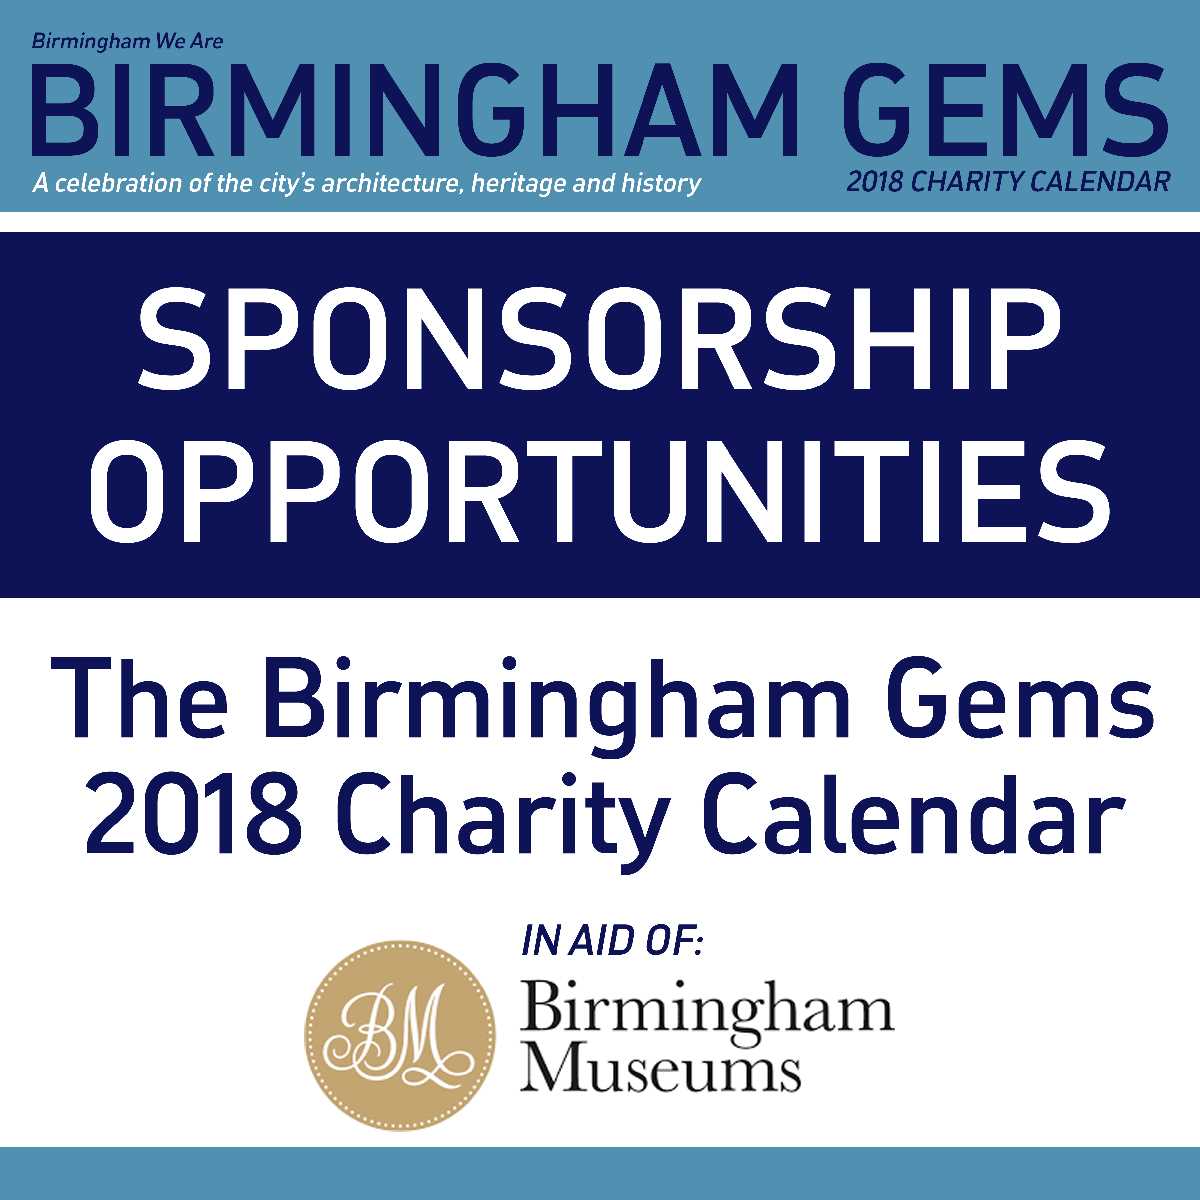 Birmingham+Gems+2018+calendar+for+charity